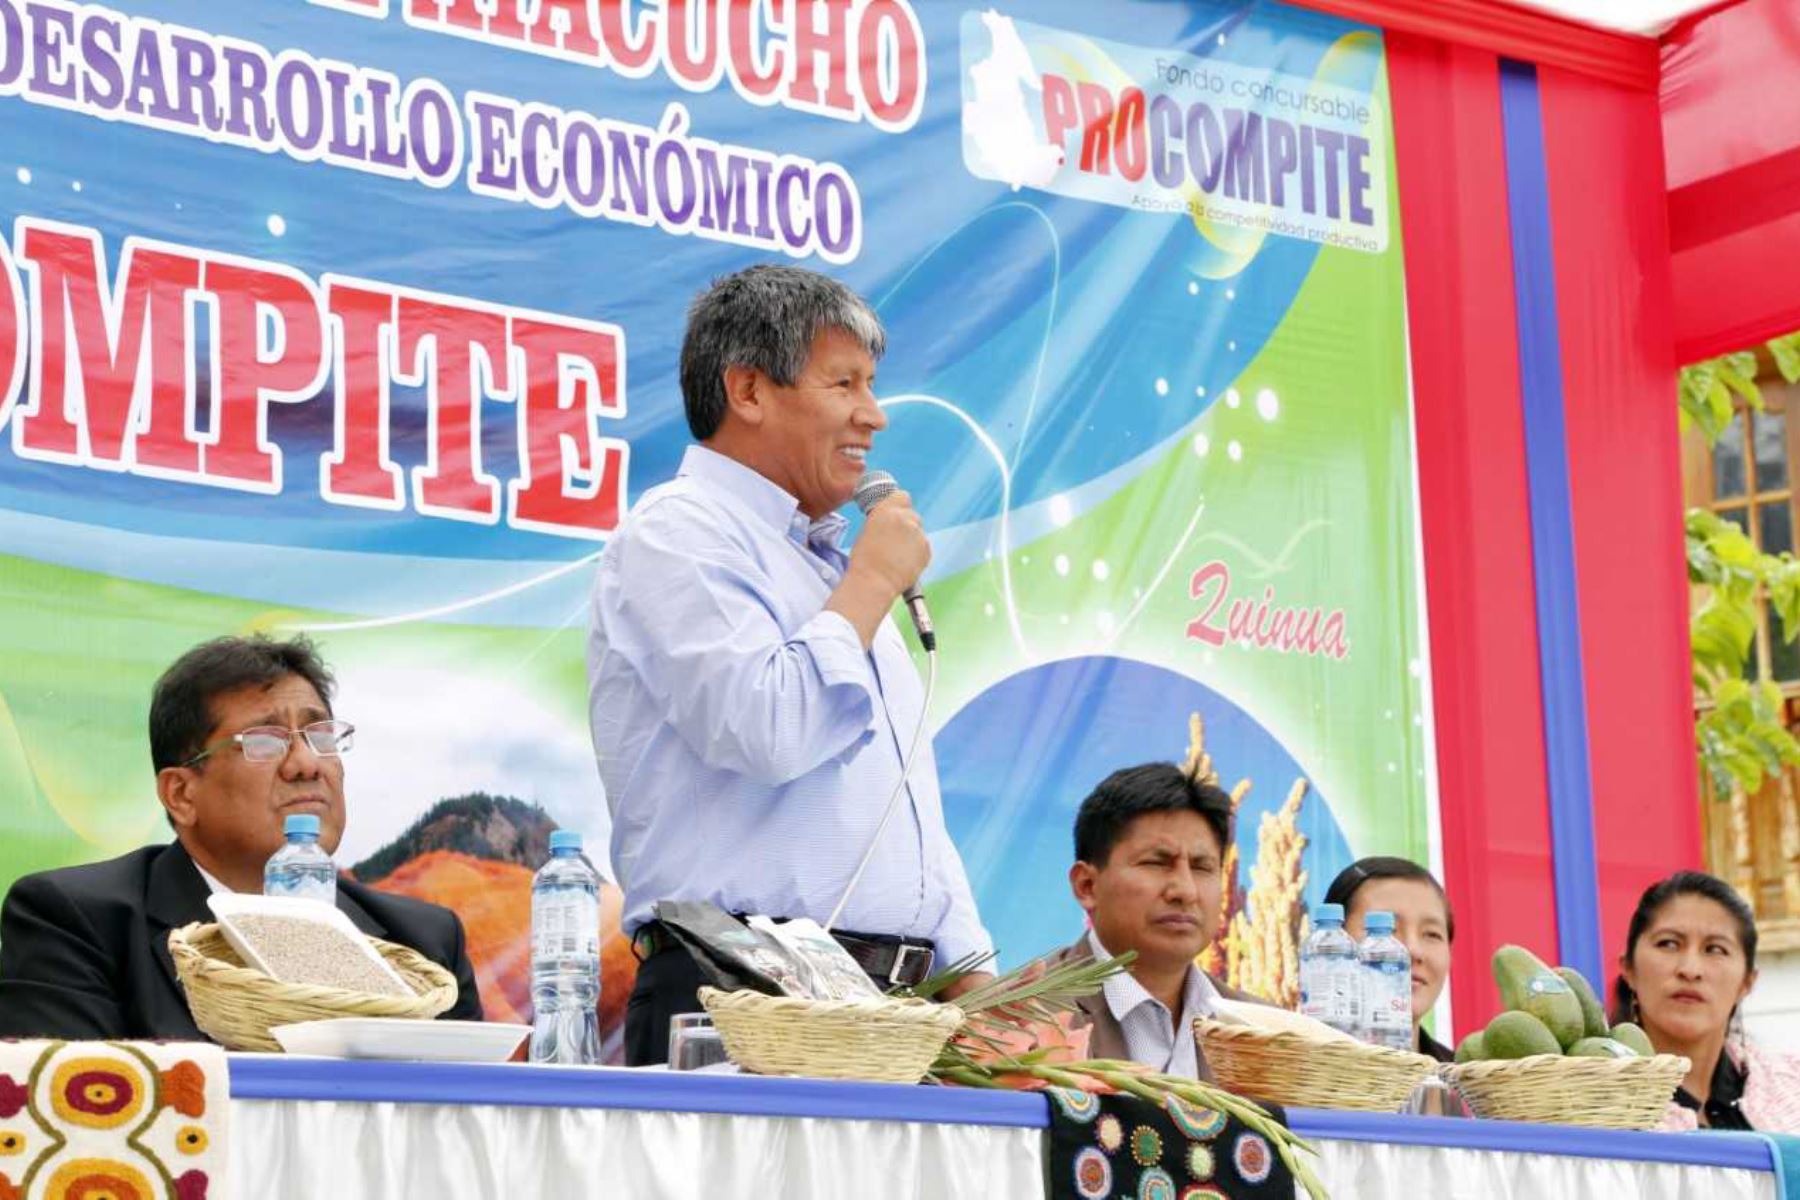 Con la finalidad de apoyar la competitividad productiva mediante el desarrollo, el gobernador regional de Ayacucho, Wilfredo Oscorima Núñez, entregó maquinarias y bienes a los ganadores de Procompite de las cadenas productivas de quinua, lácteos y artesanía.